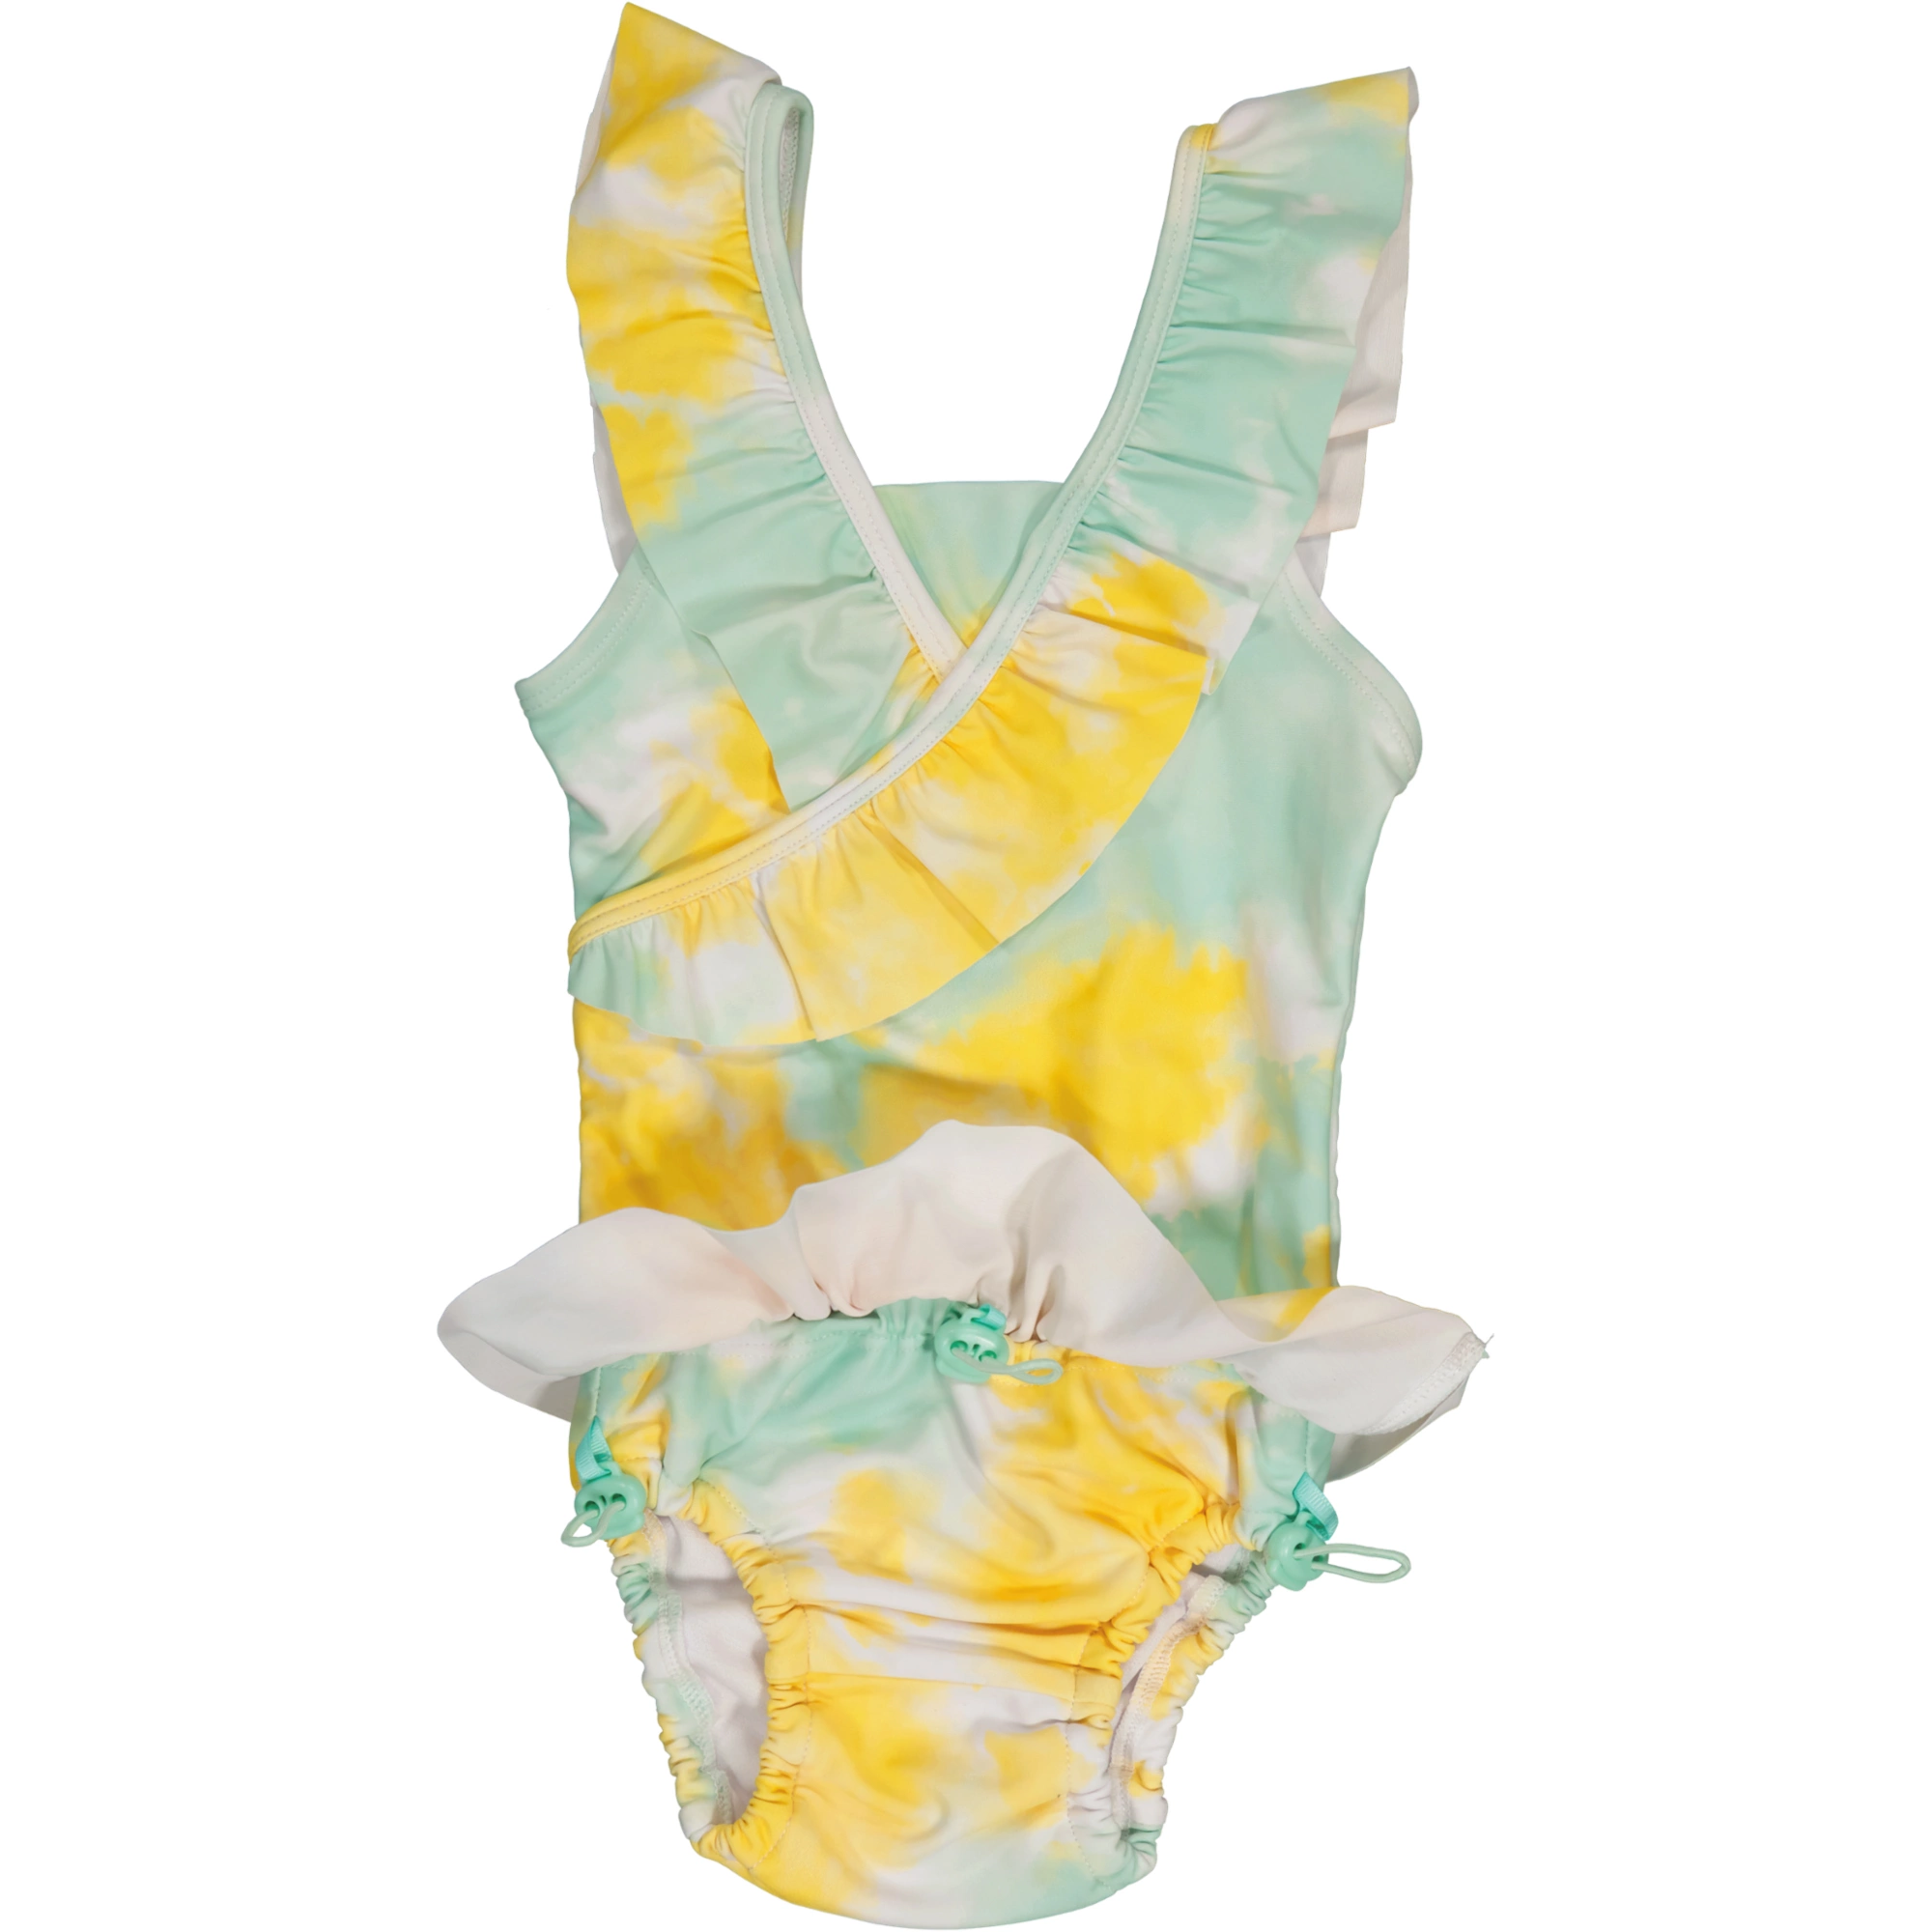 UV Baby swim suit Tie dye yellow